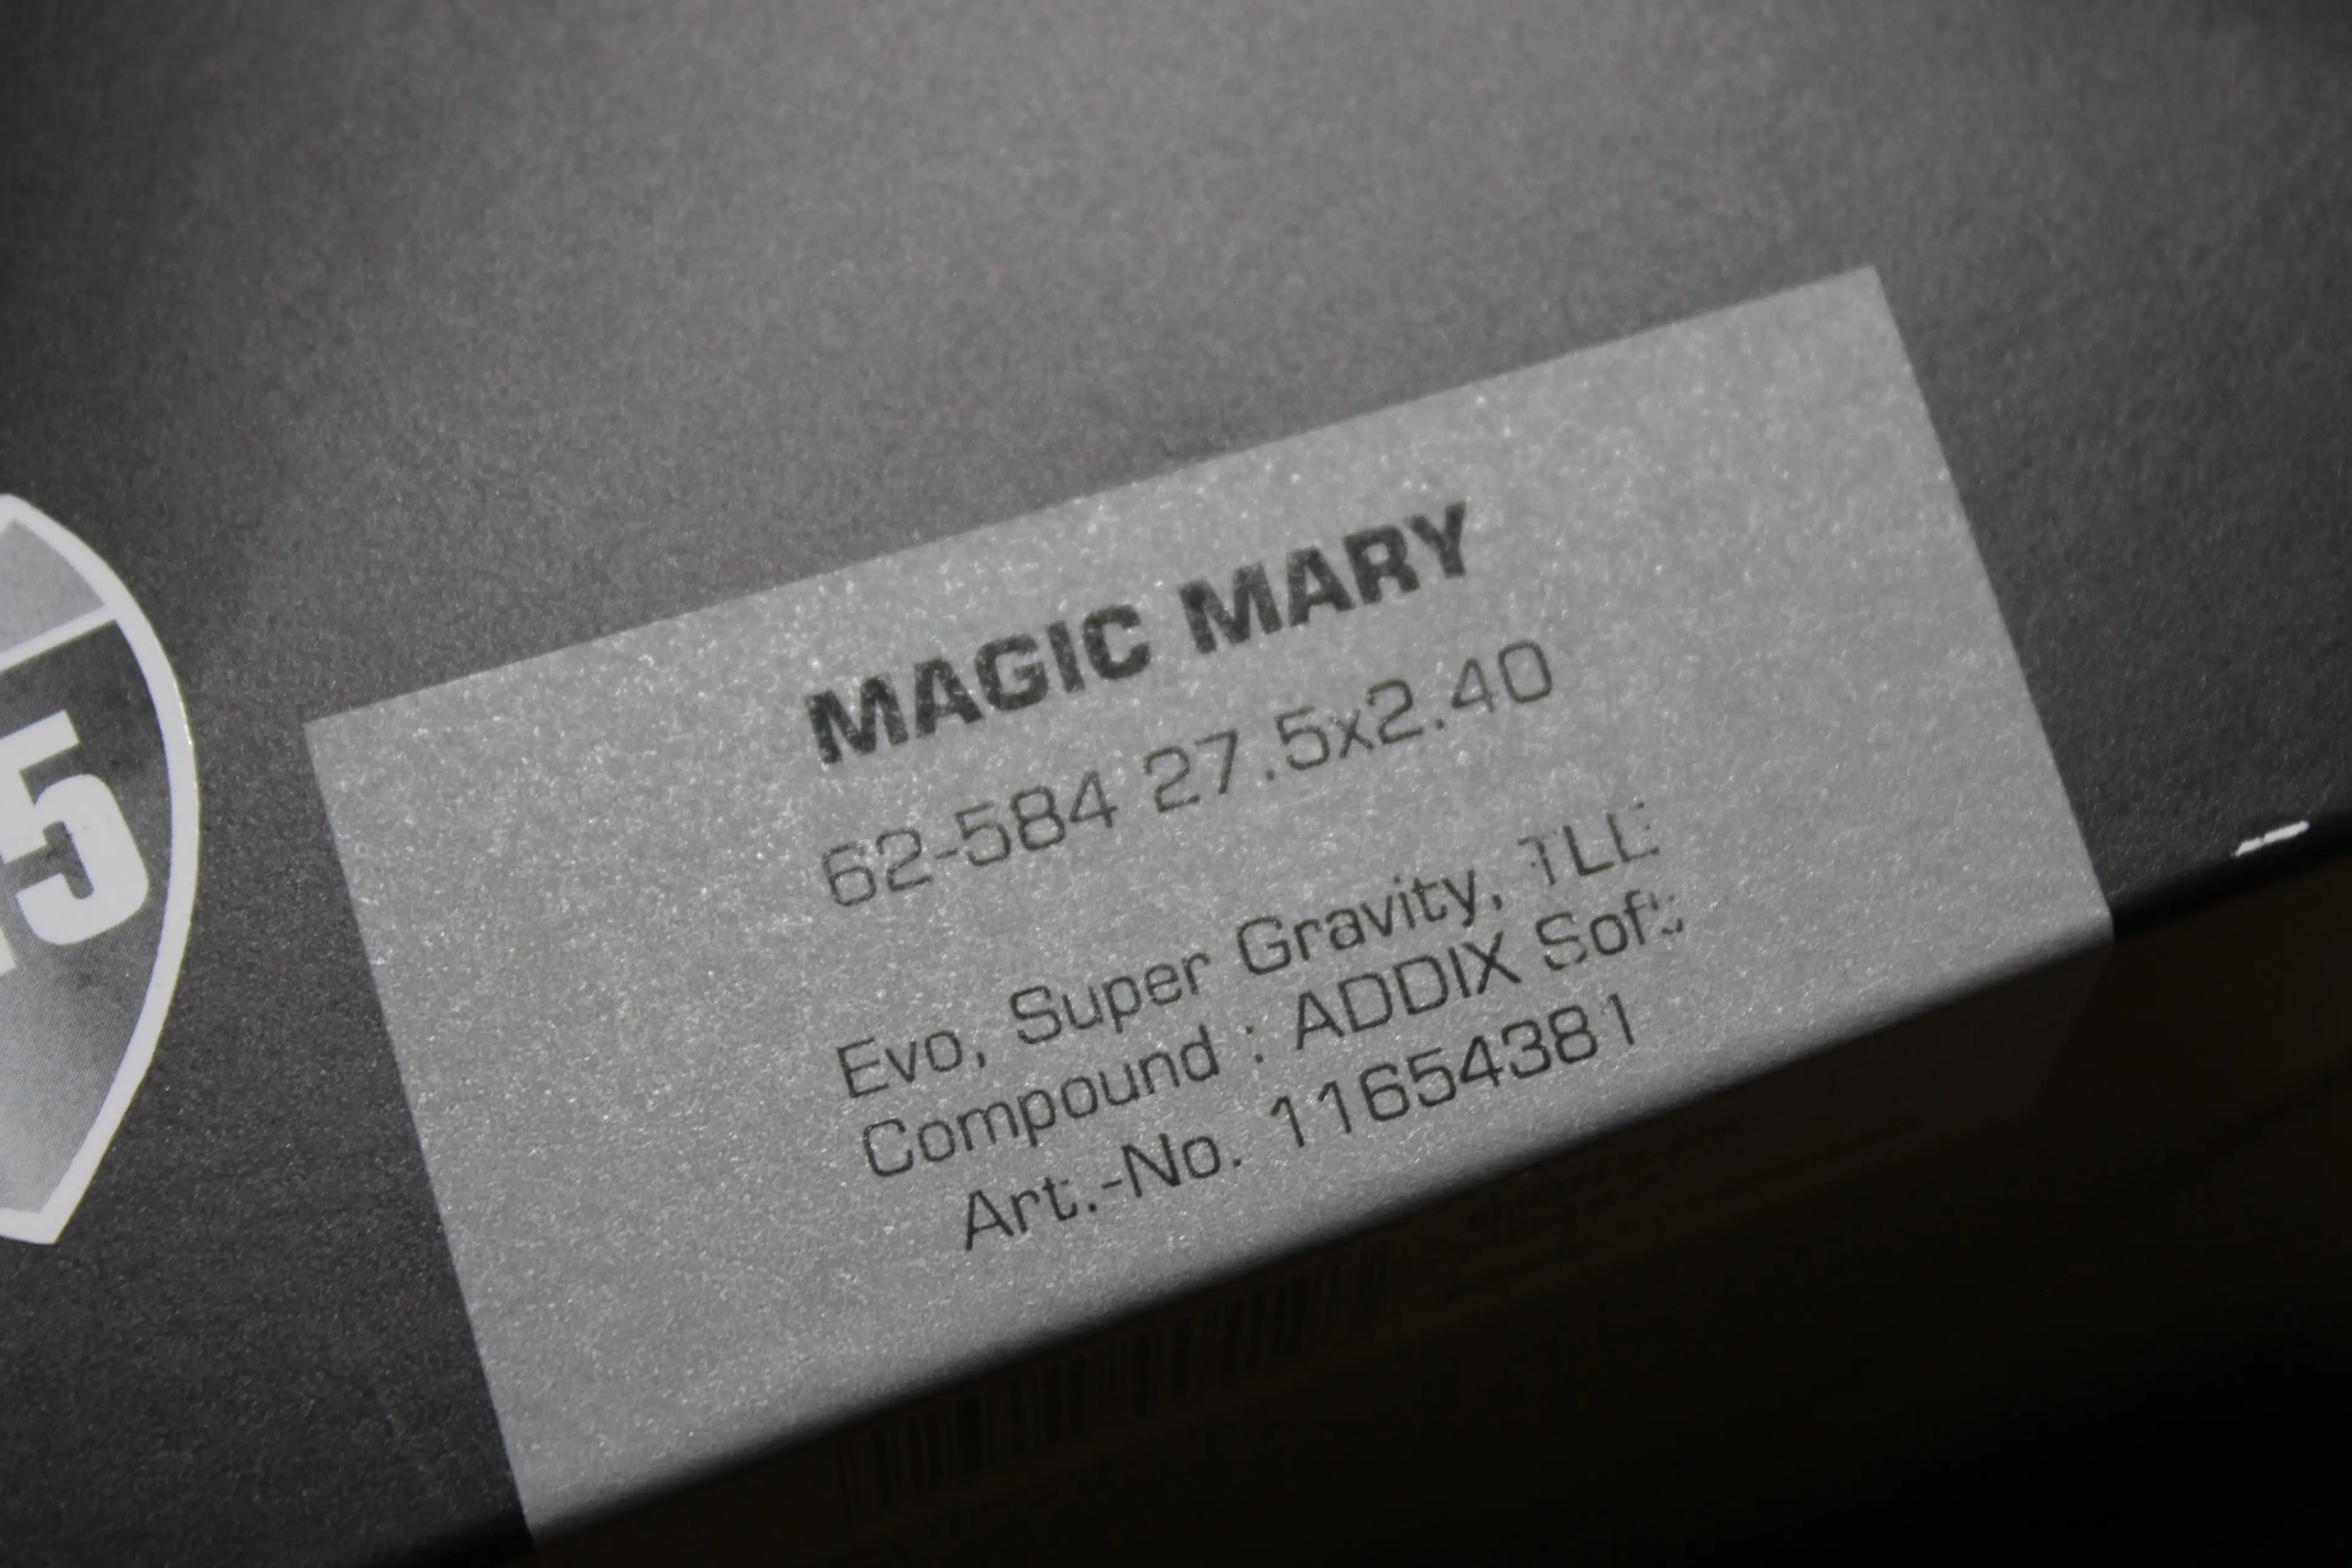 3. Schwalbe Magic Mary Evo 27.5x2.40 Bronze Addix Soft - Super Gravity DH TL-Easy